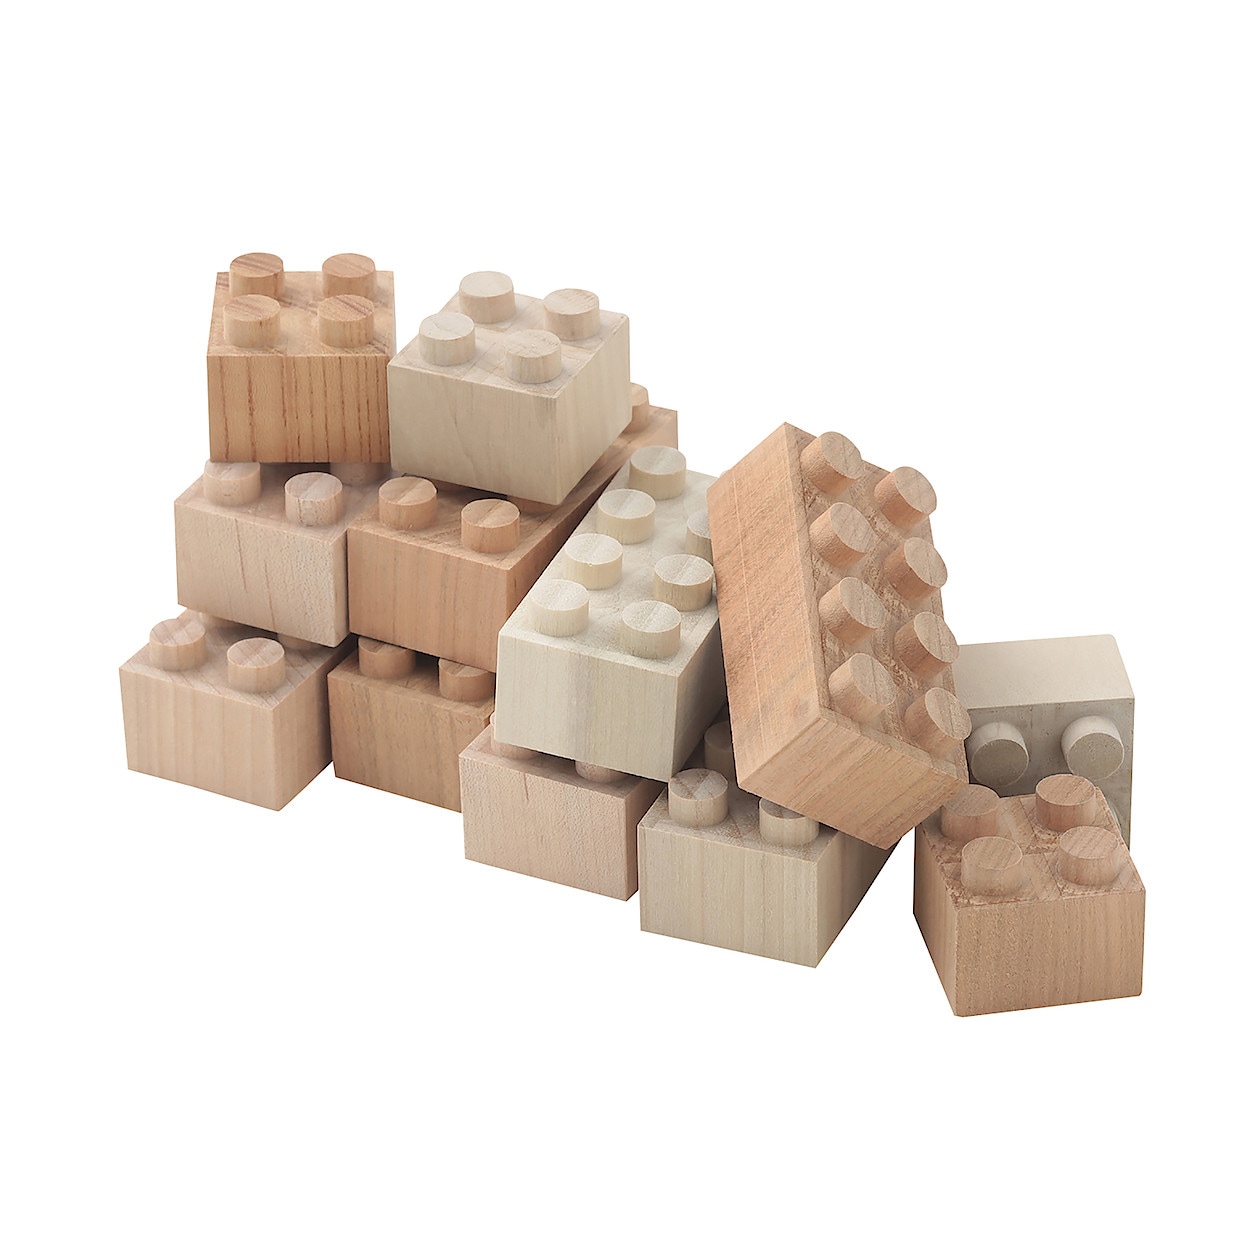 木のブロック もくロック大小セット 木のおもちゃ 木のつみき 積み木 無印良品